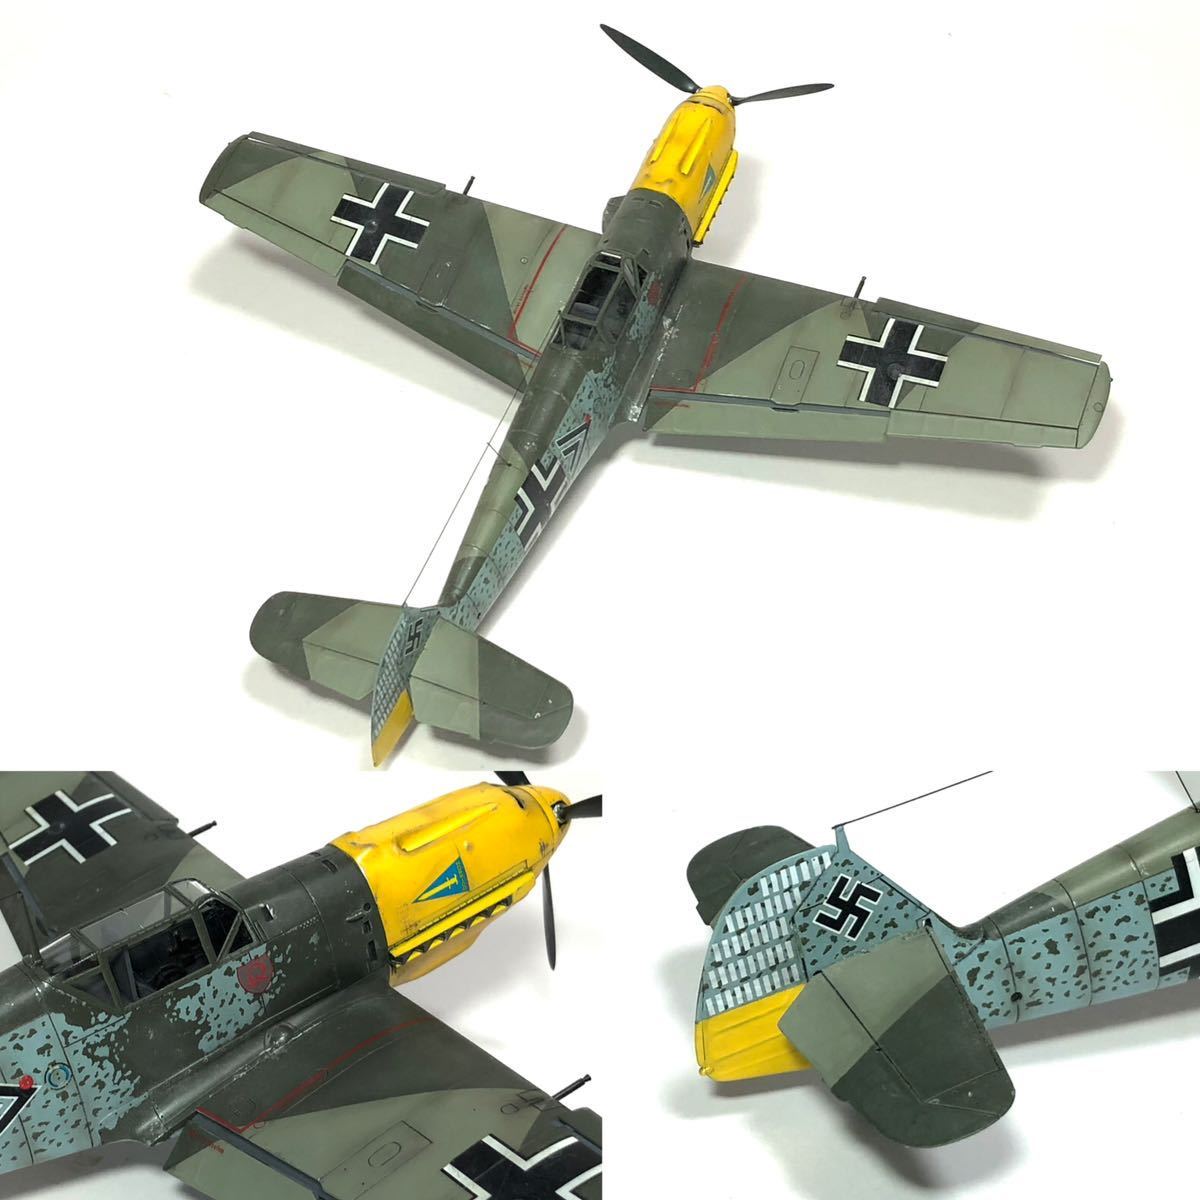 1/48 Tamiya Messerschmitt Bf109E-4 final product 